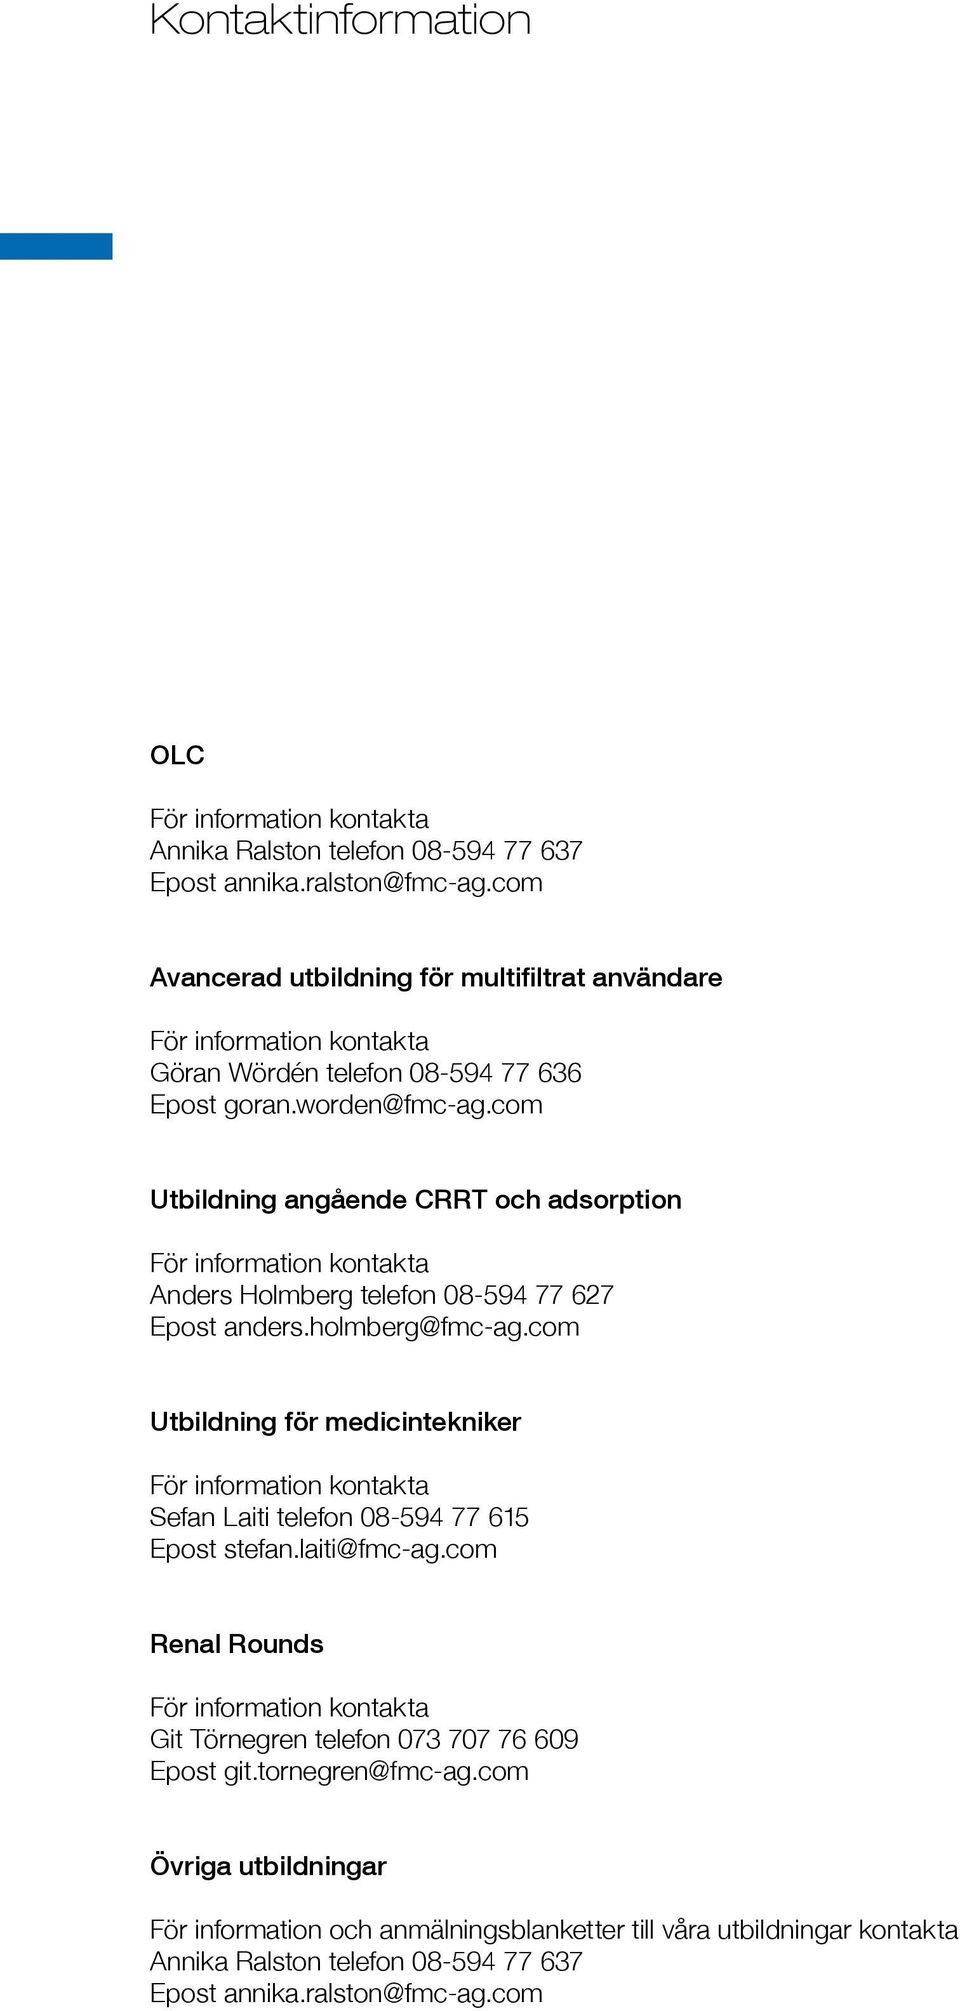 com Utbildning angående CRRT och adsorption För information kontakta Anders Holmberg telefon 08-594 77 627 Epost anders.holmberg@fmc-ag.